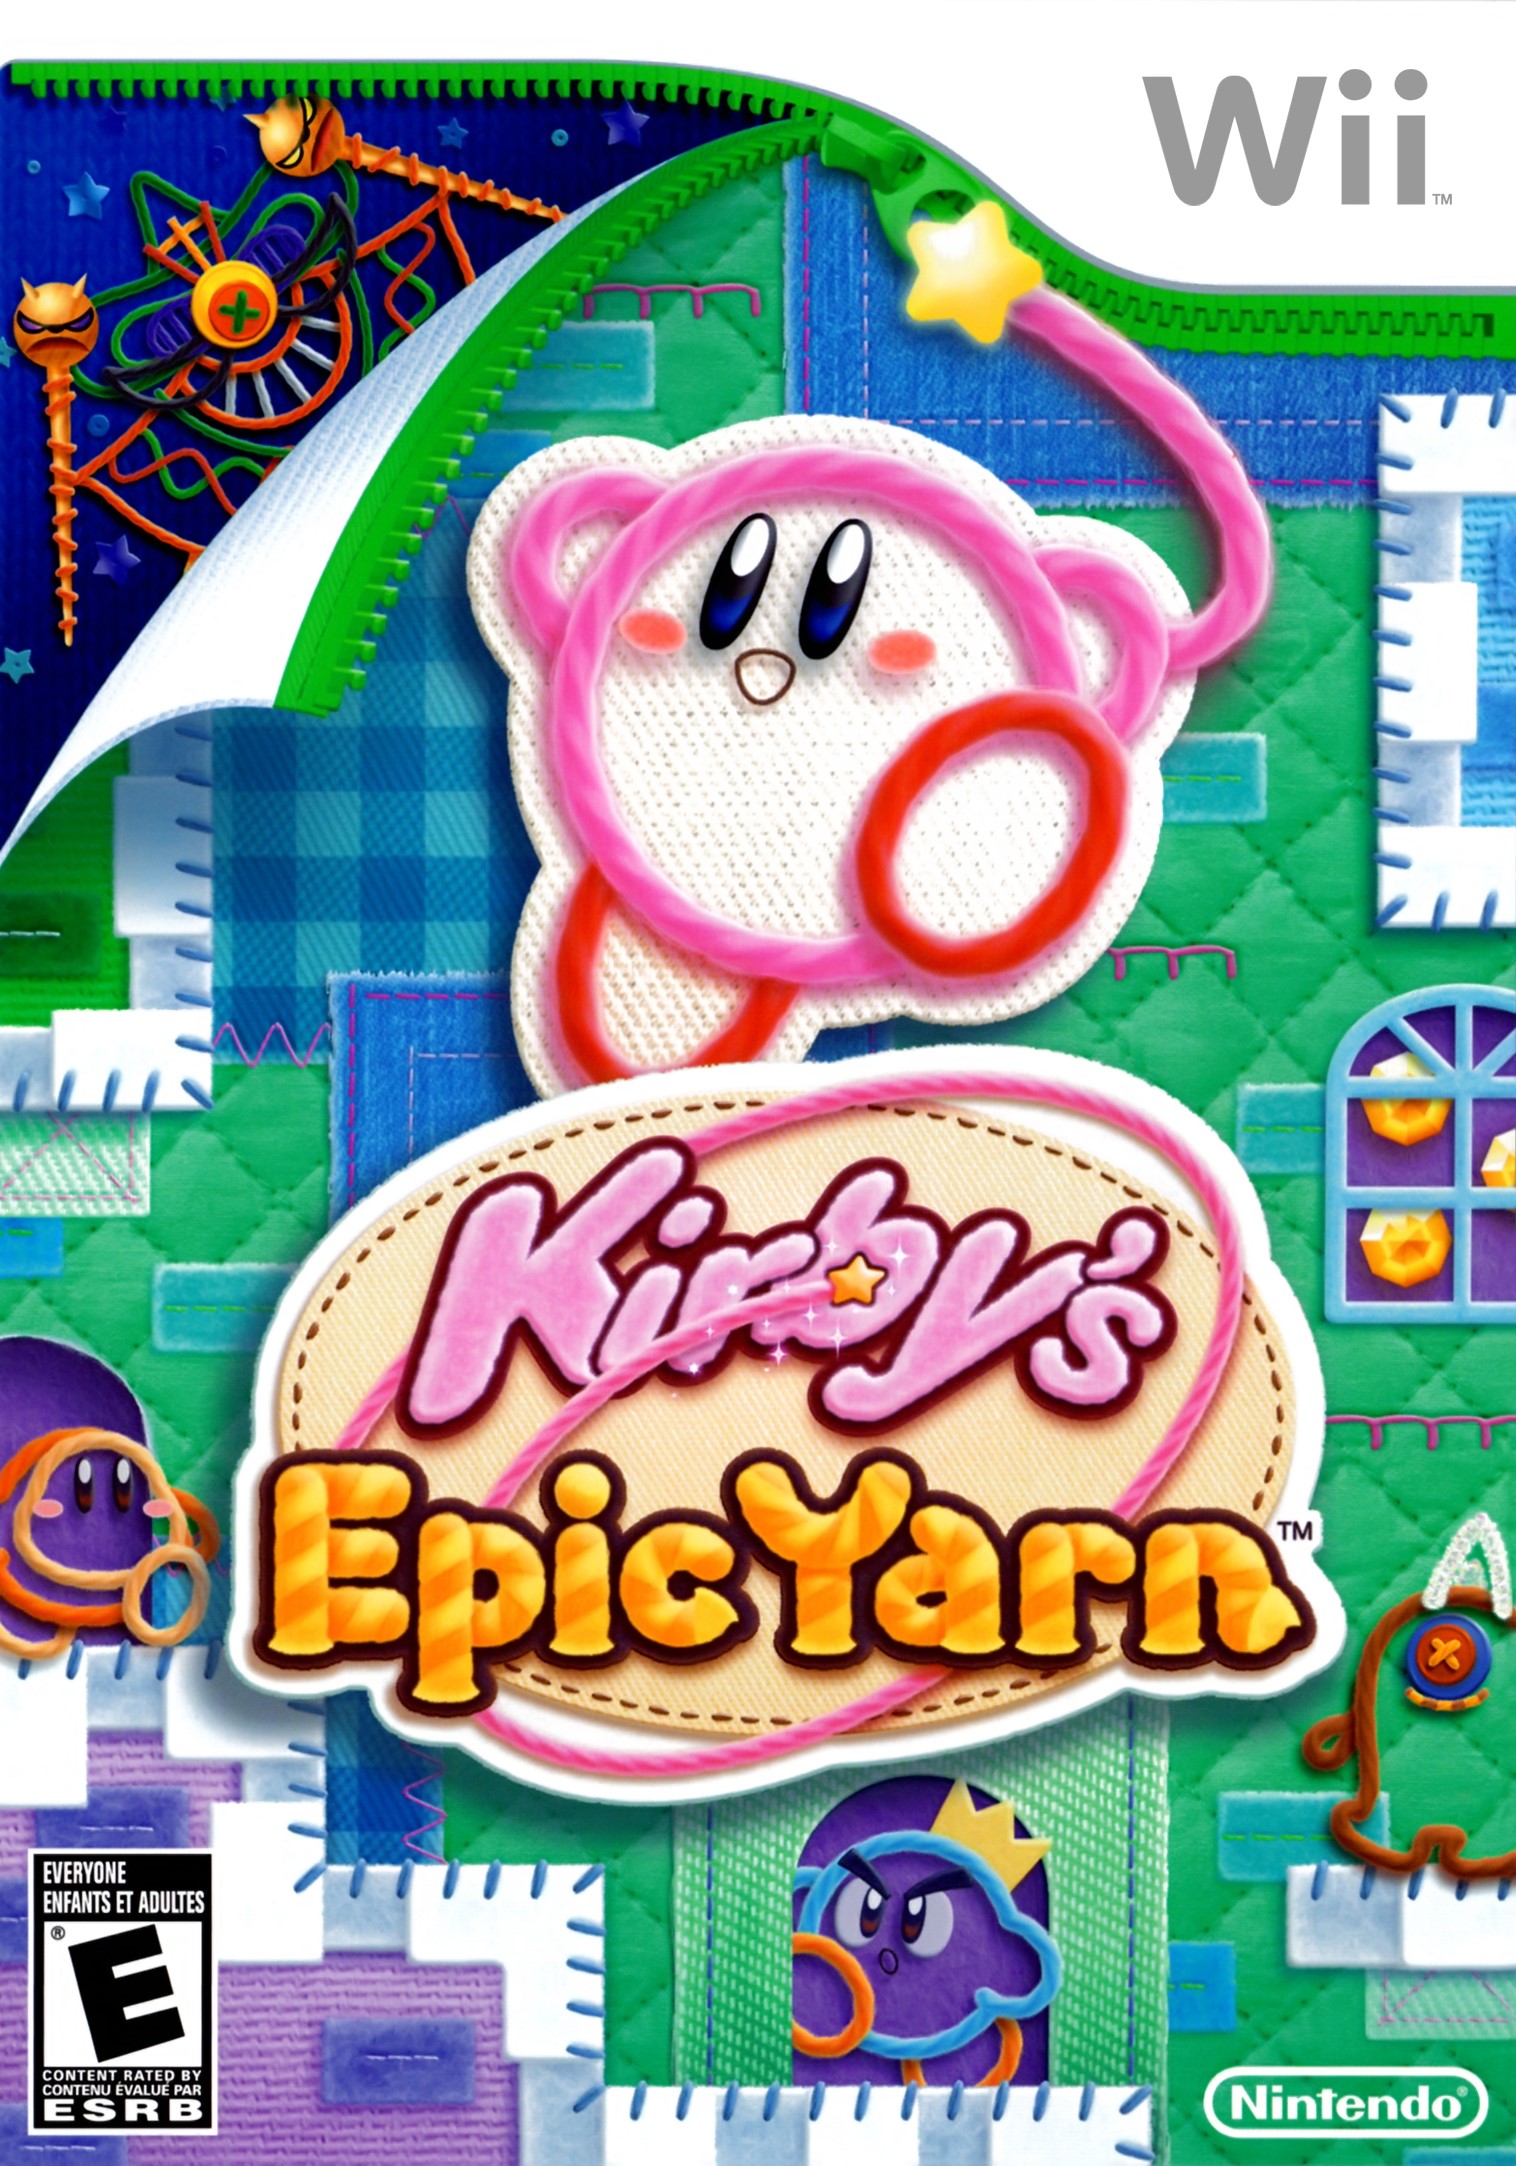 'Epic Yarn'